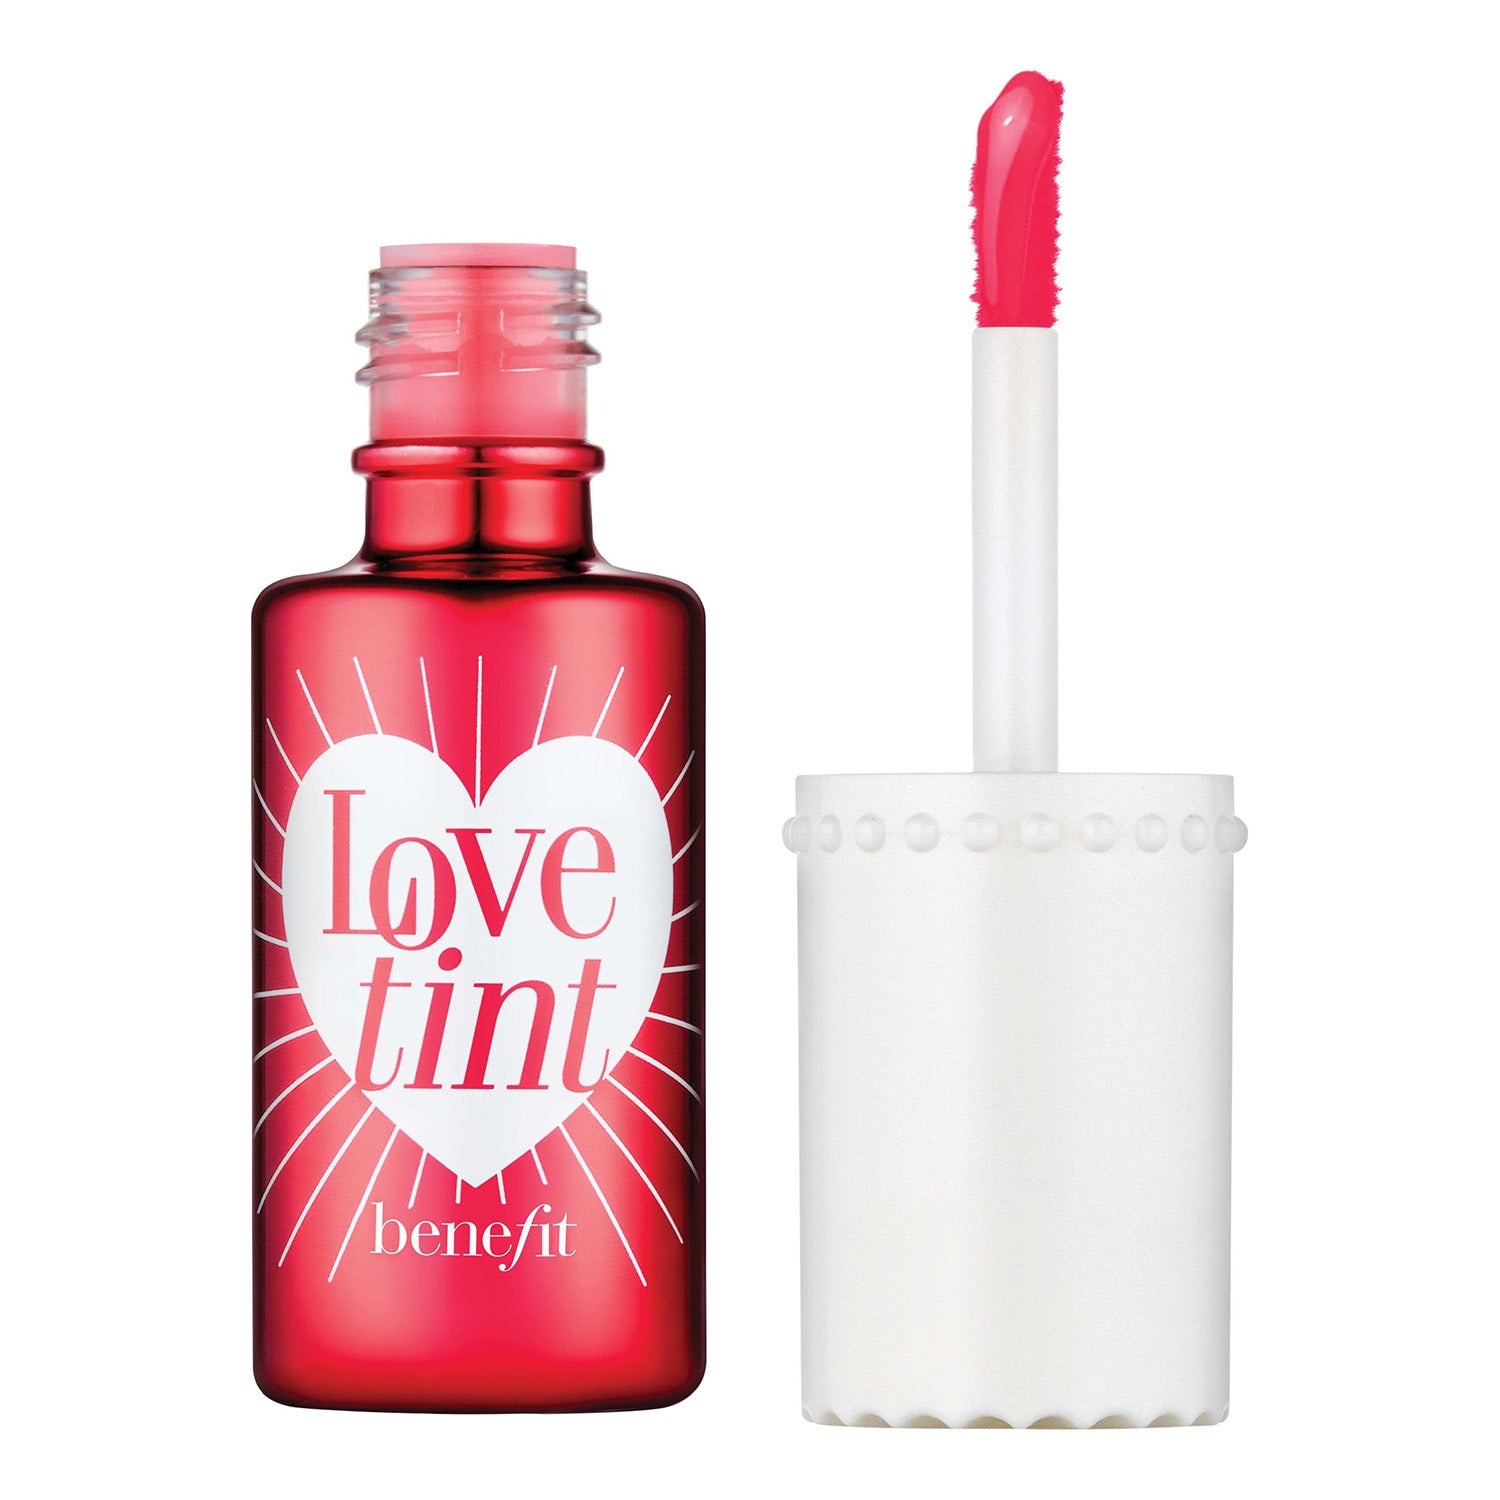 benefit-love-tint-blush-liquide-joues-et-levres-6-ml